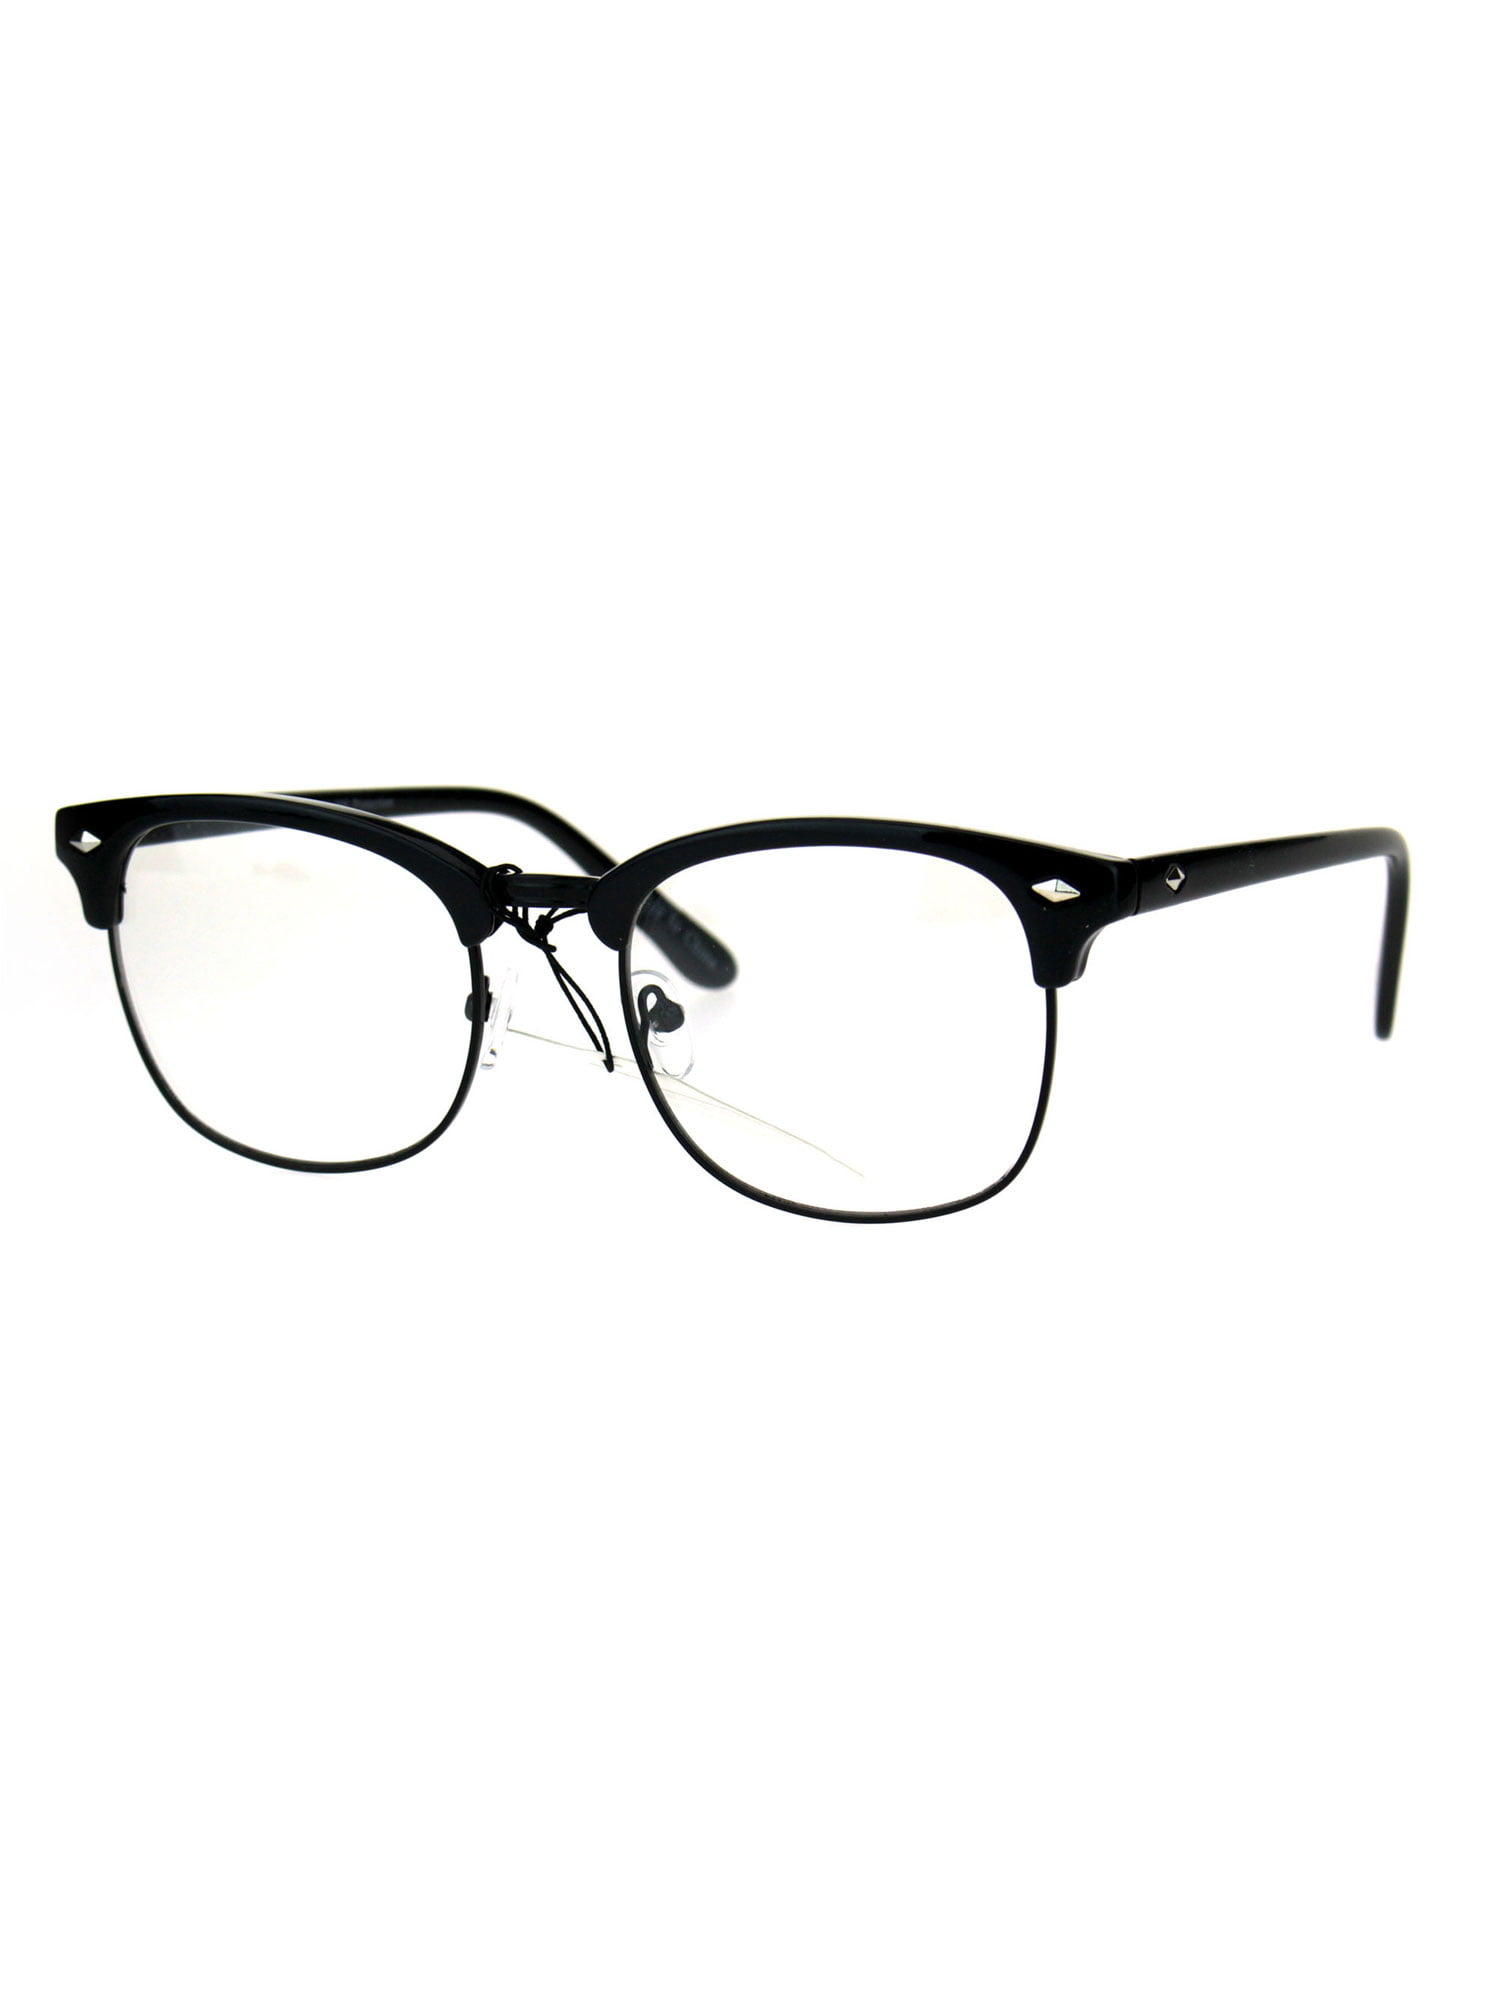 Mens Classic Horned Half Rim Hipster Nerdy Retro Eye Glasses All Black ...